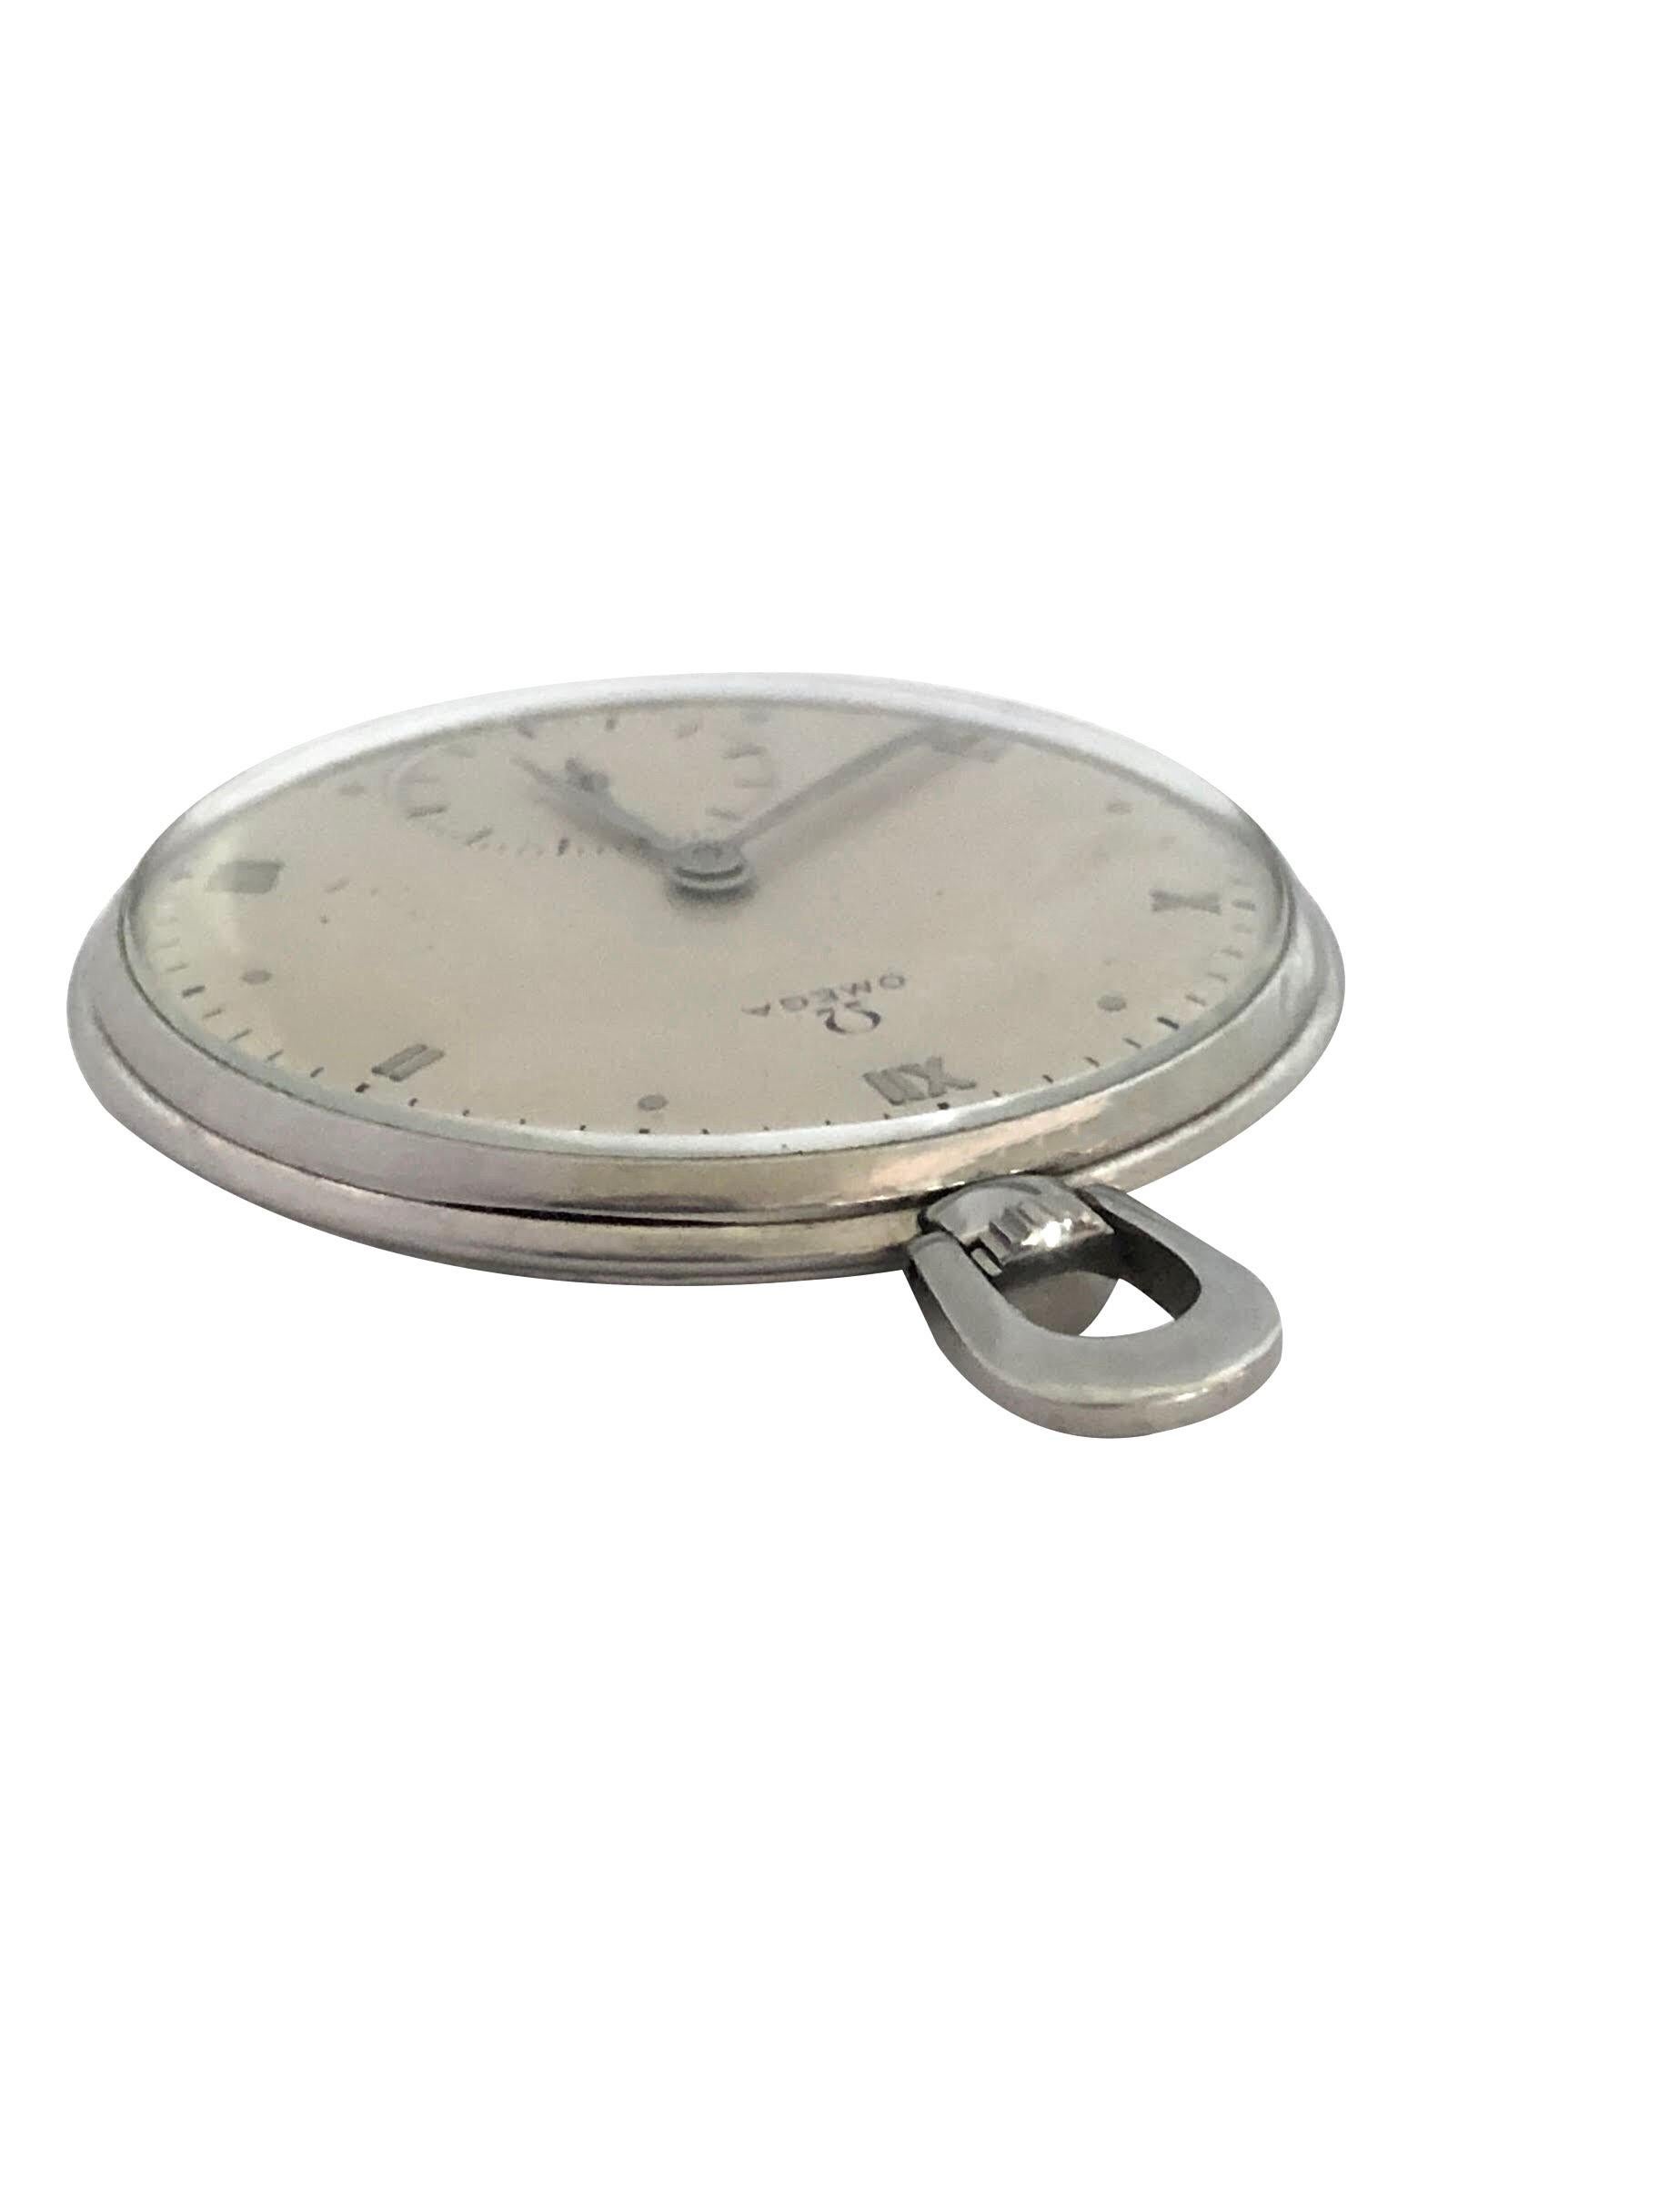 Circa late 1930s Omega Pocket Watch, 44 M.M. Diamètre X  Boîtier en acier inoxydable de 7 M.M. d'épaisseur, 3 pièces, signé Omega.  15 Jewell mécanique, vent manuel Mouvement de levier en nickel. Cadran original, presque neuf, en satin argenté, avec